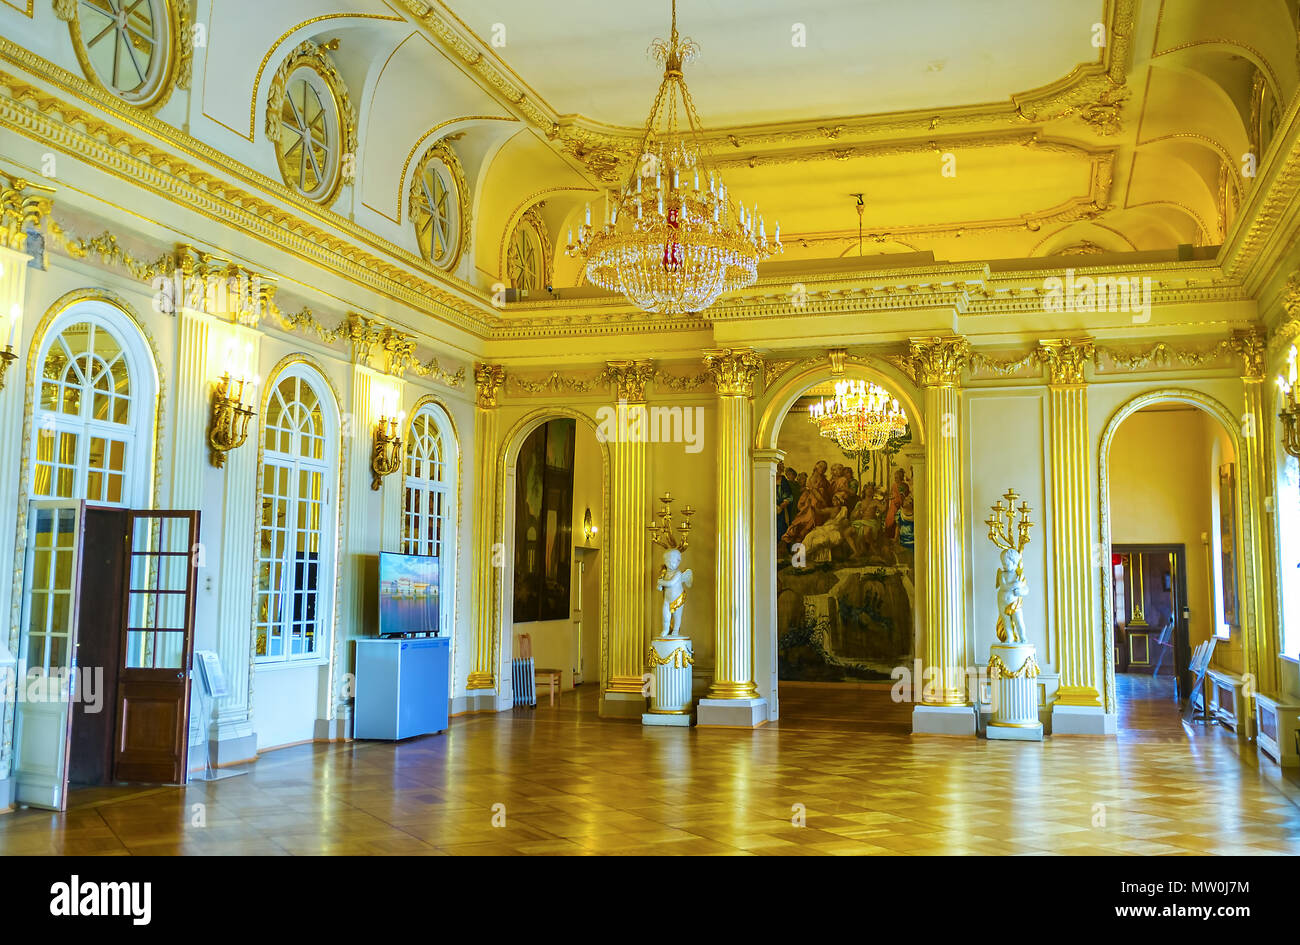 SAINT PETERSBURG, Russia - 26 Aprile 2015: la grande sala del Palazzo Menšikov riccamente decorate con scolpita in stucco dorato e sculture di marmo, Aprile Foto Stock